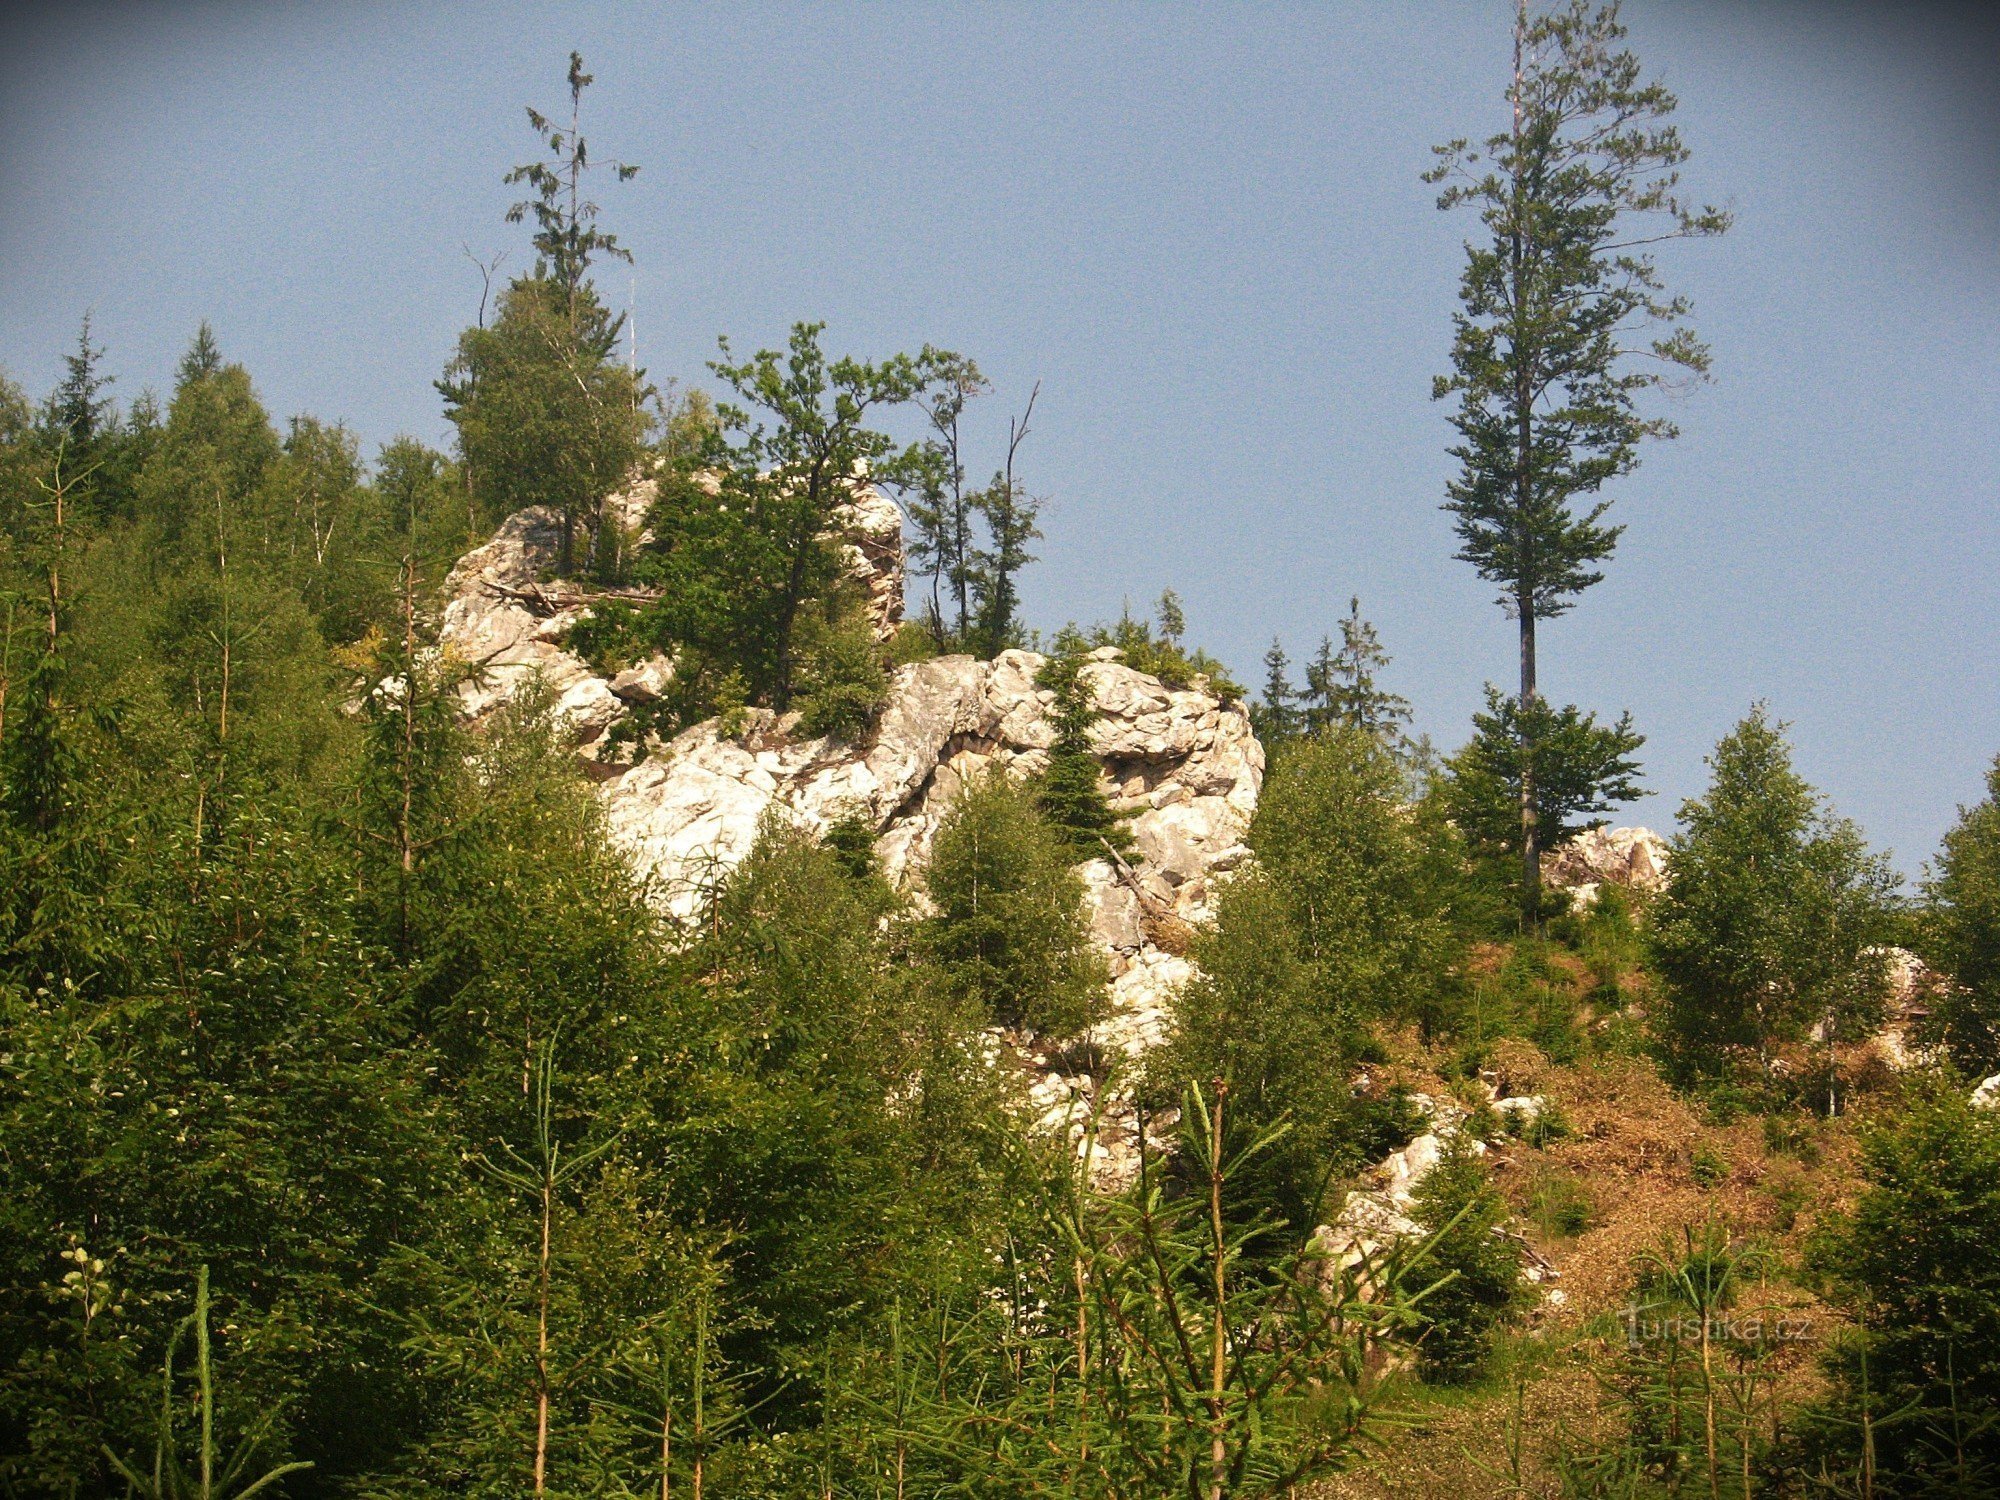 Skály pod Posedem (White Rock) - Jeseníky Mountains